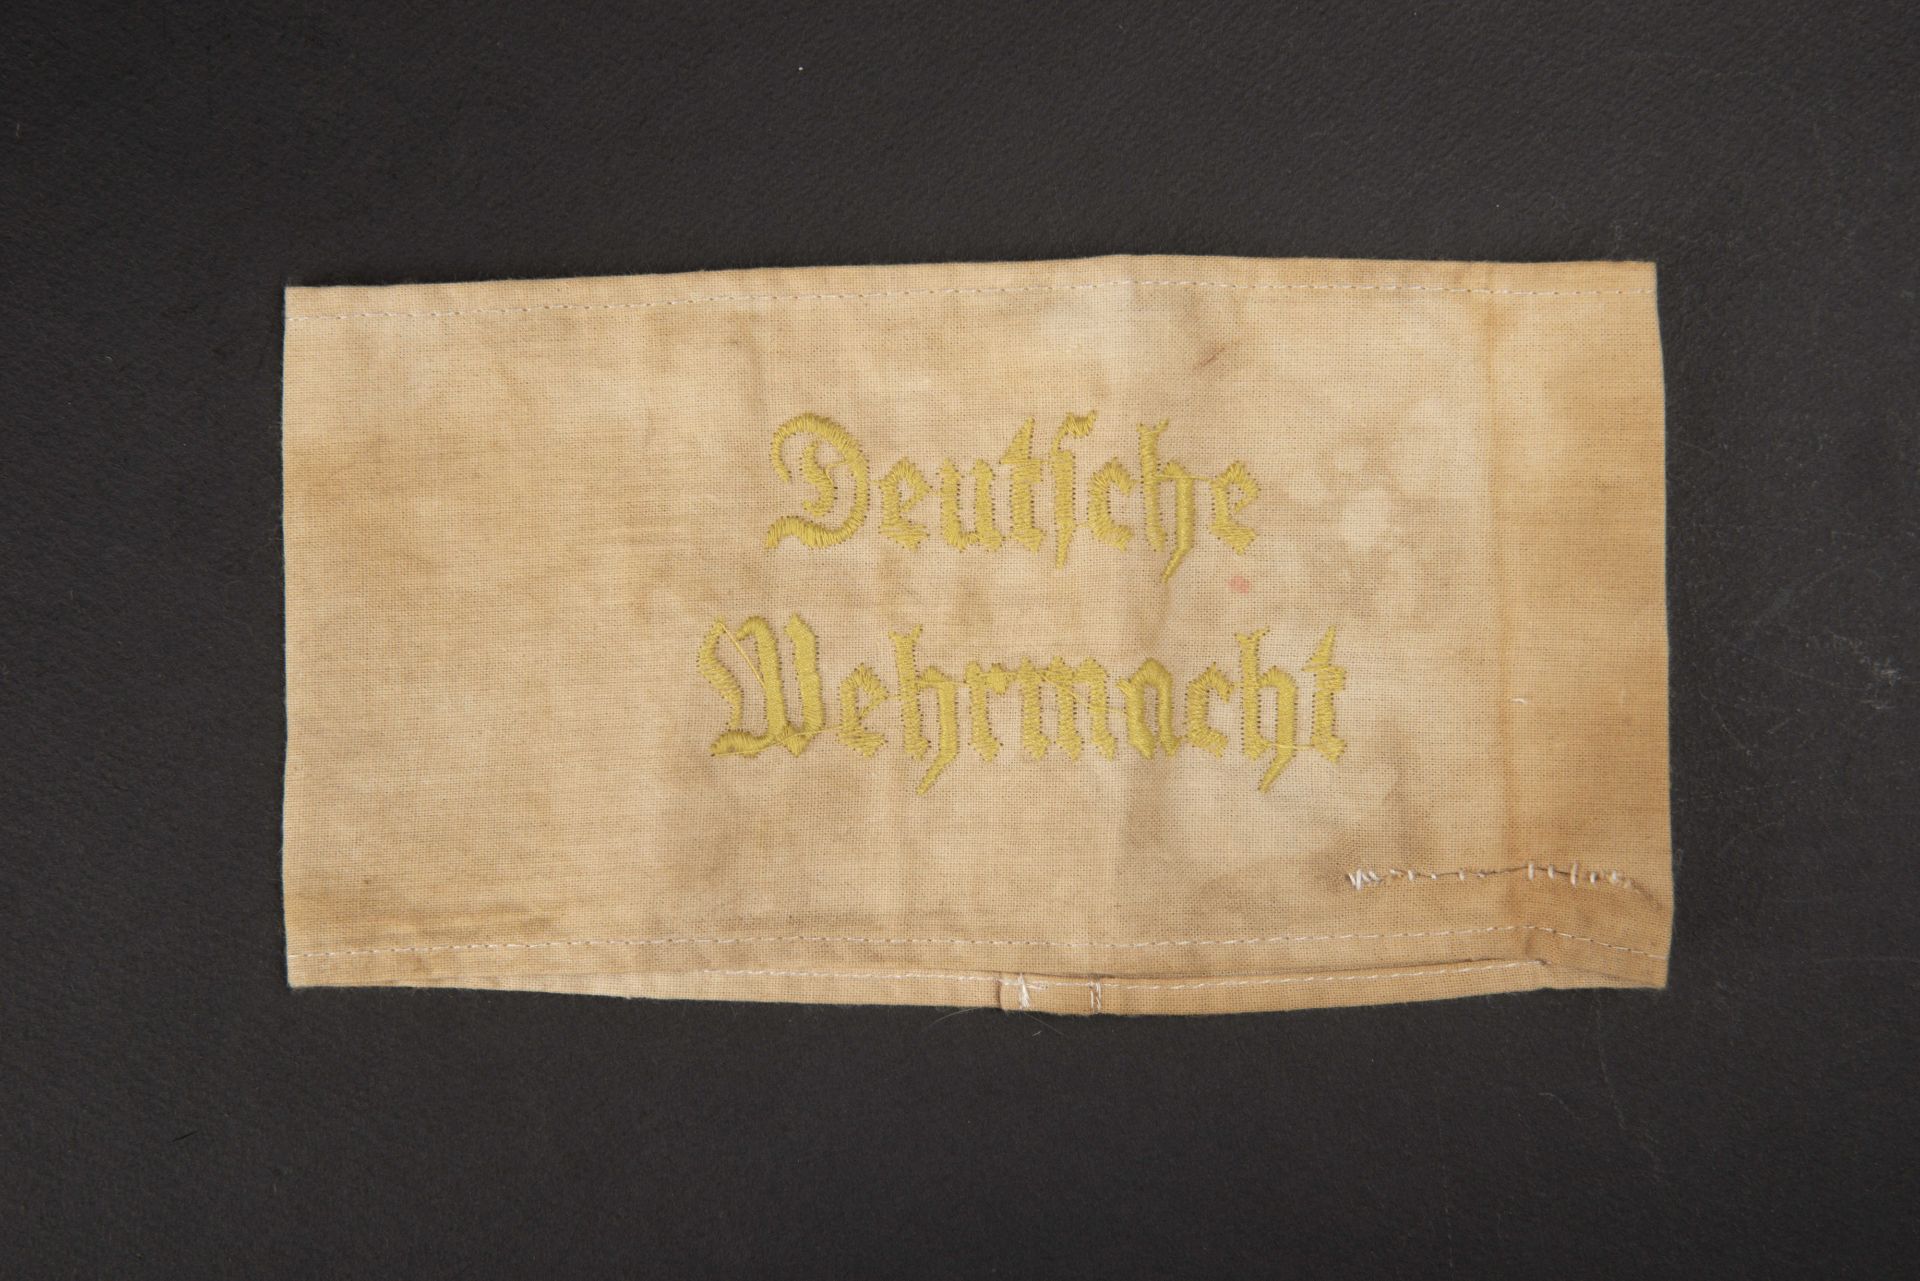 Brassard Deutsche Wehrmacht. Deutsche Wehrmacht armband.